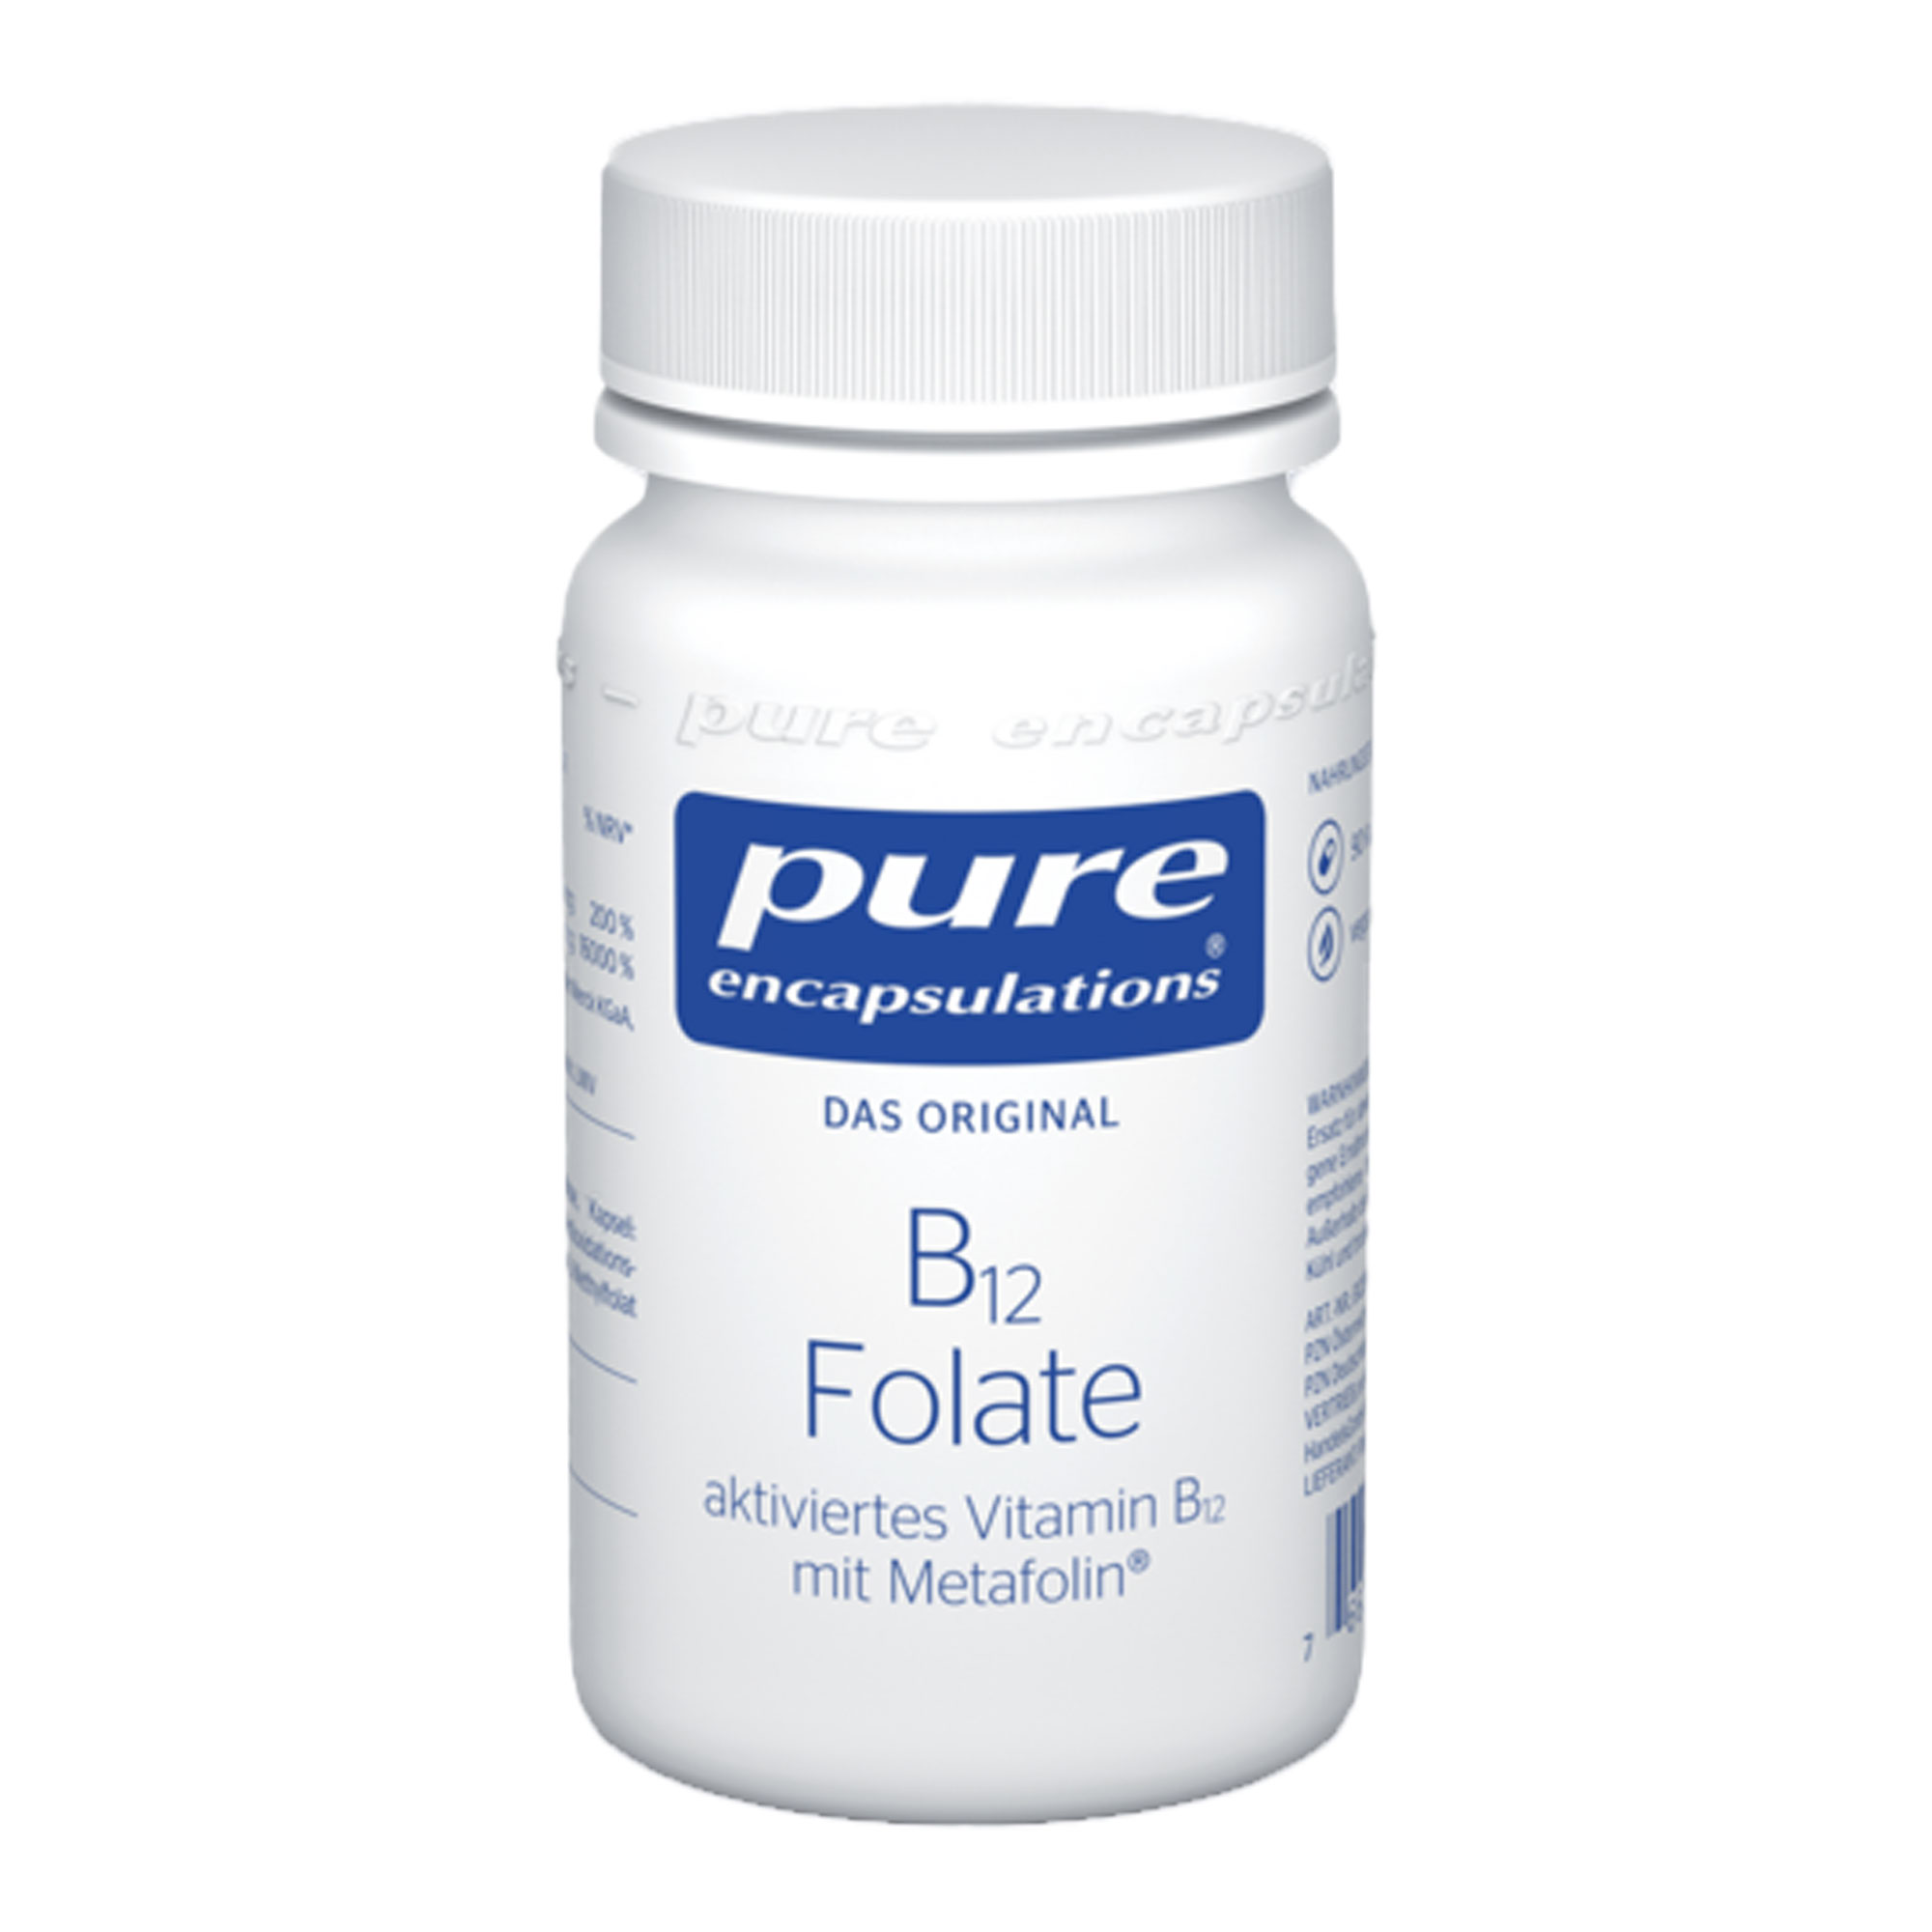 Nahrungsergänzungsmittel mit Folat und Vitamin B12.